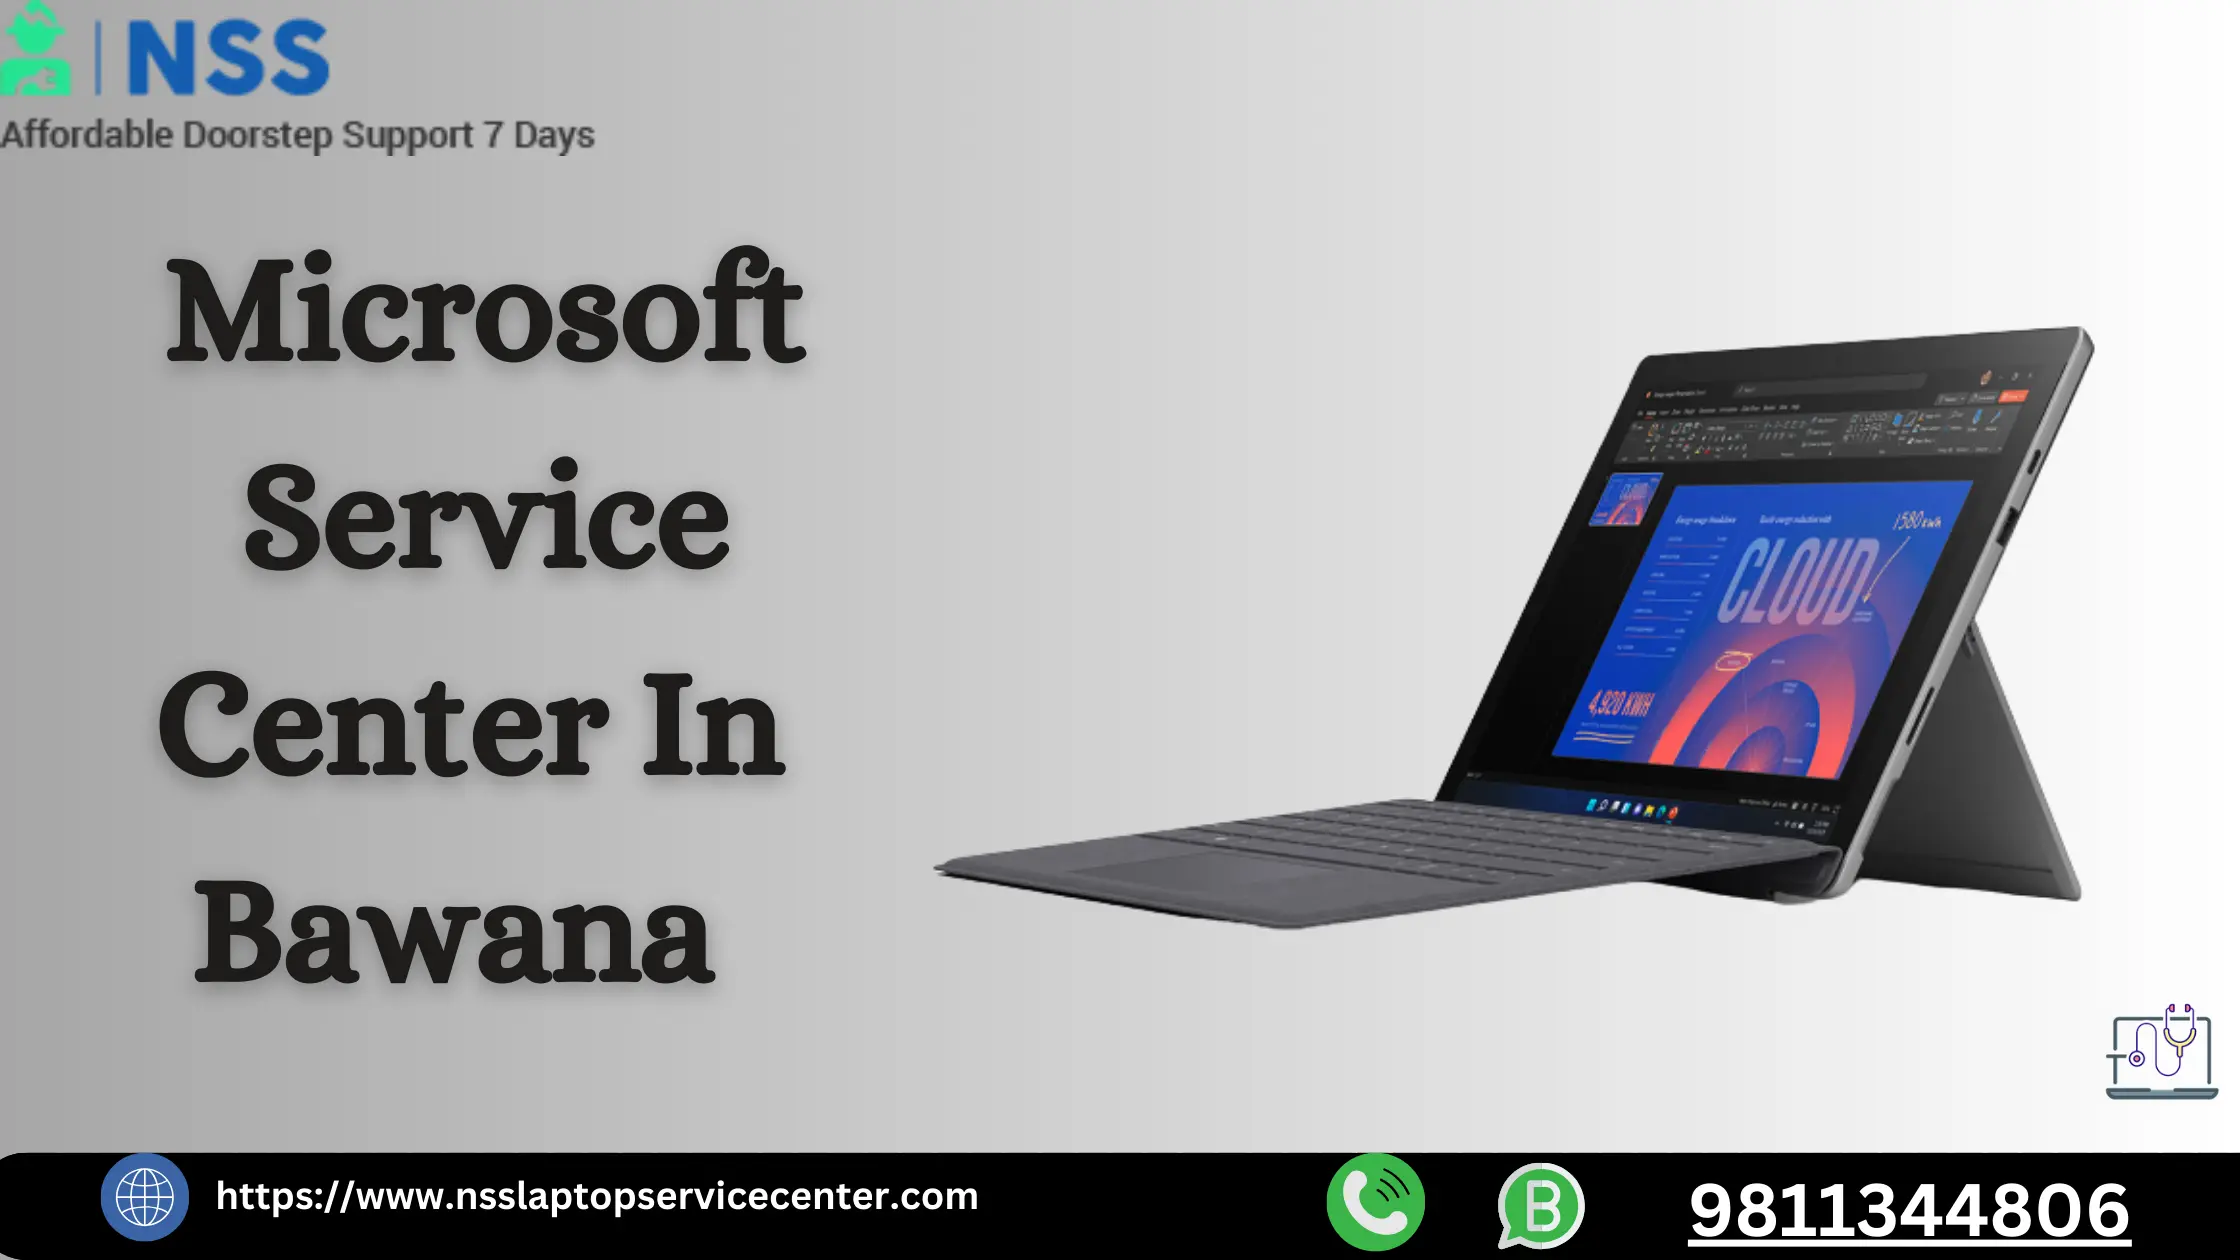 Microsoft Service Center in Bawana Near Delhi